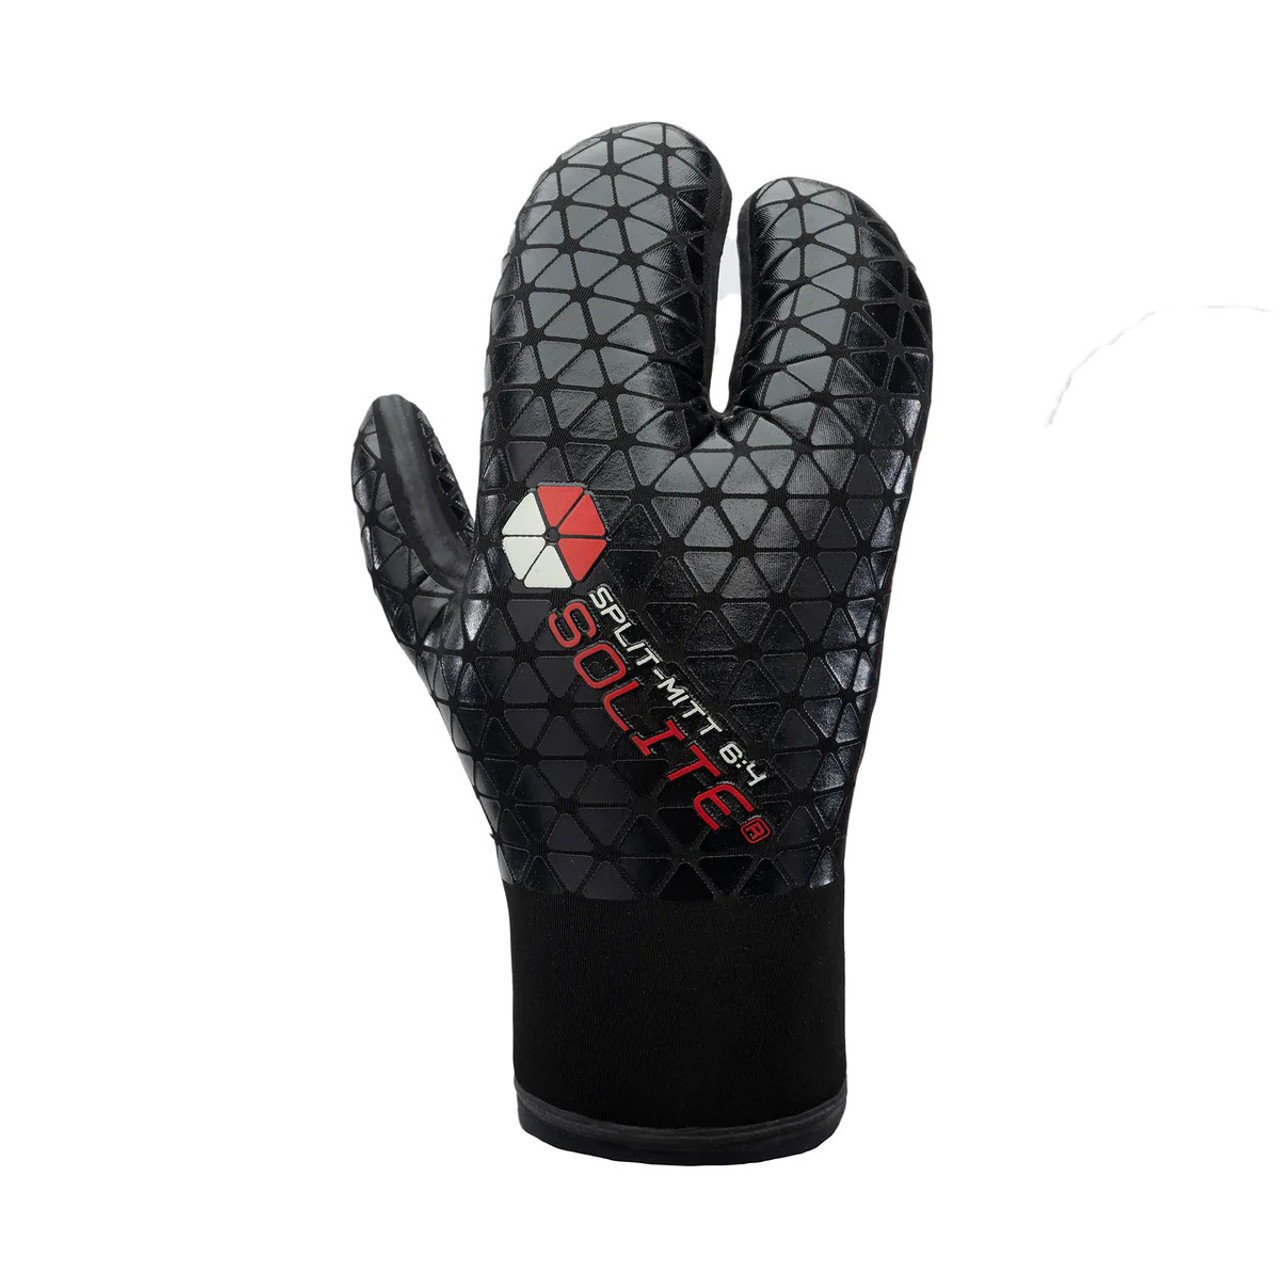 Gants néoprène Flexi gloves 3mm